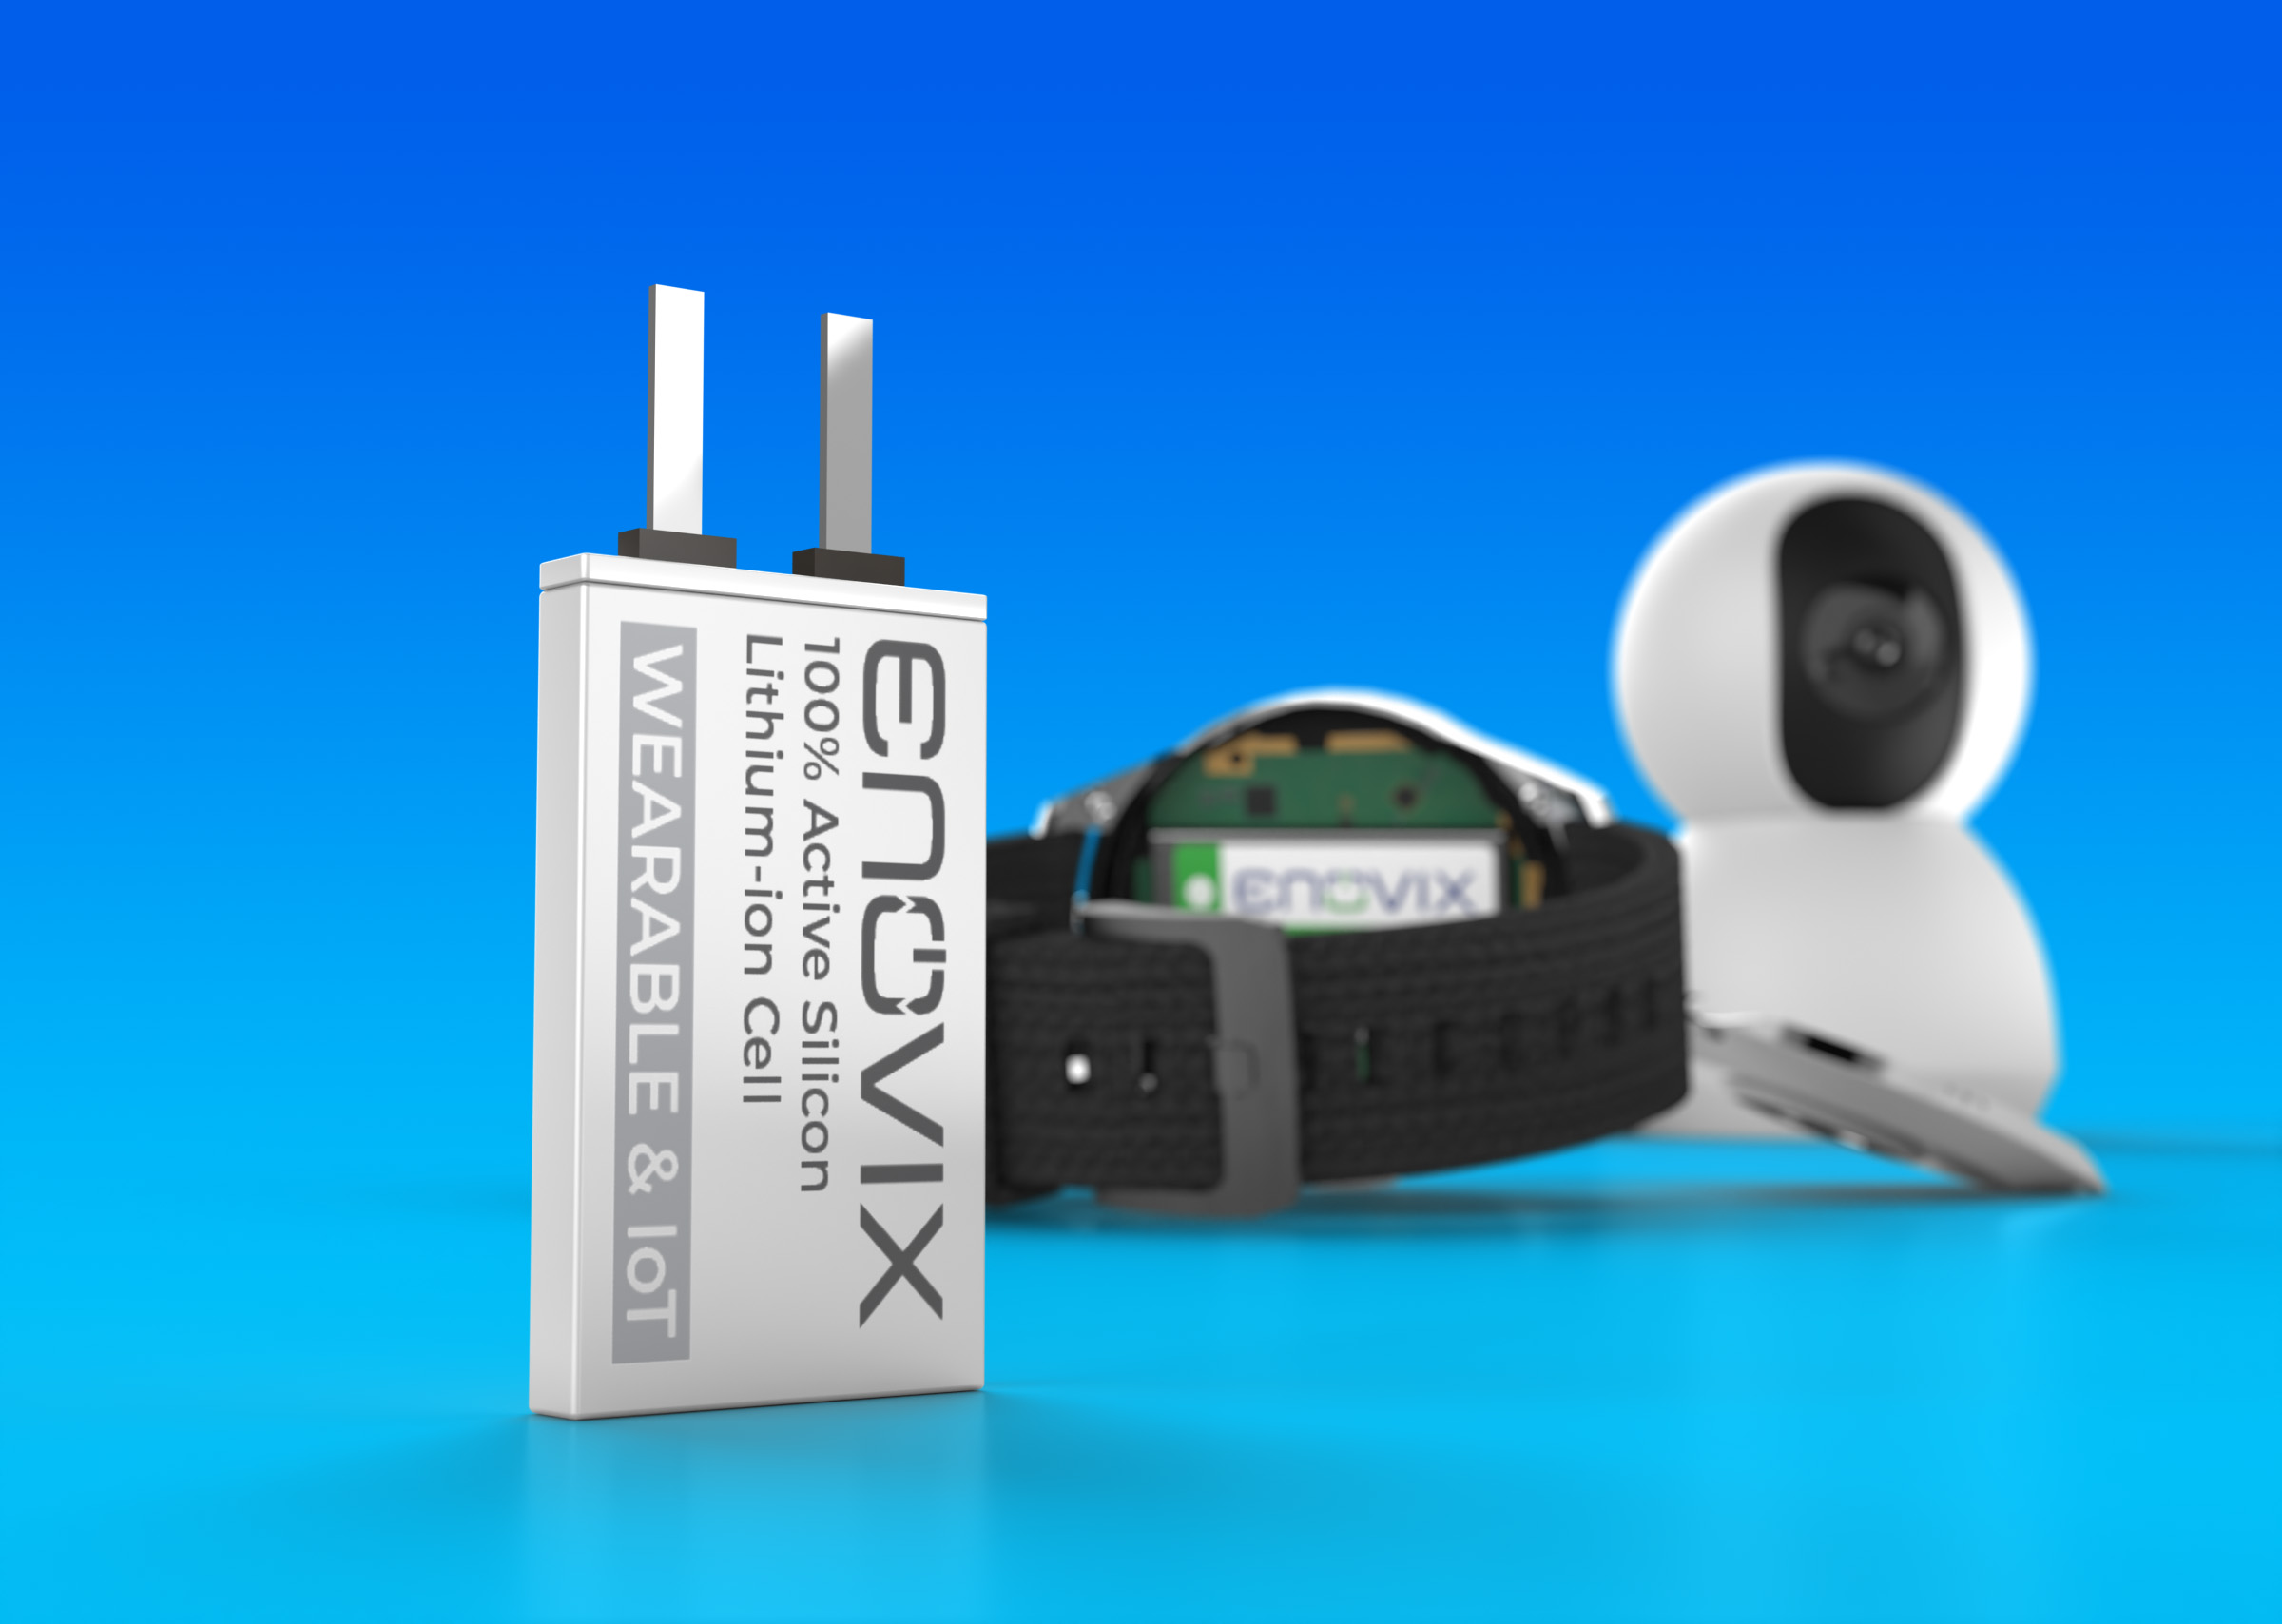 Enovix宣布其标准物联网及可穿戴设备电池全面上市